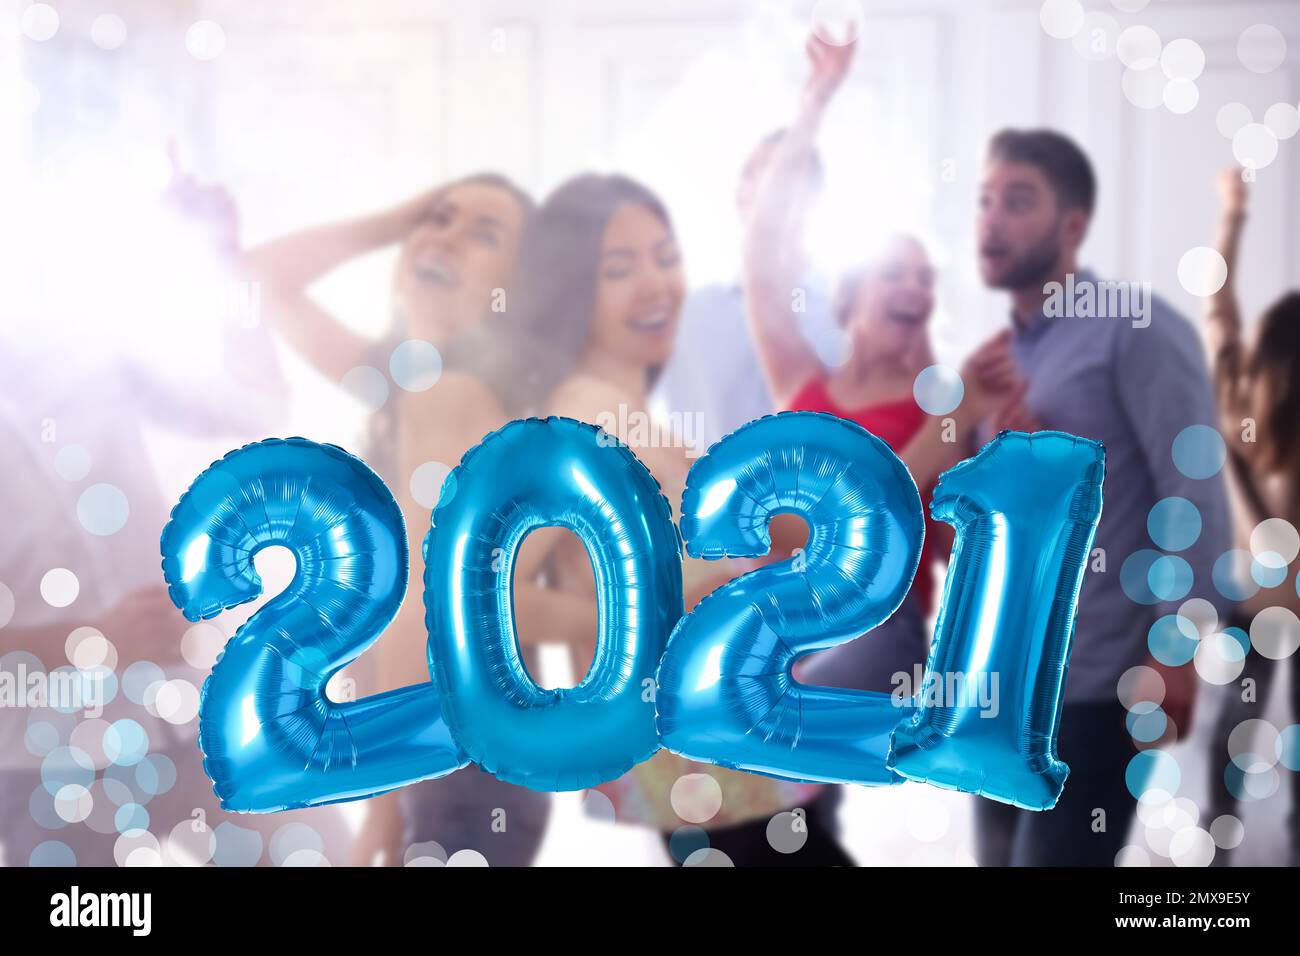 Papier d'aluminium bleu 2021 ballons et des personnes dansant à la fête Banque D'Images